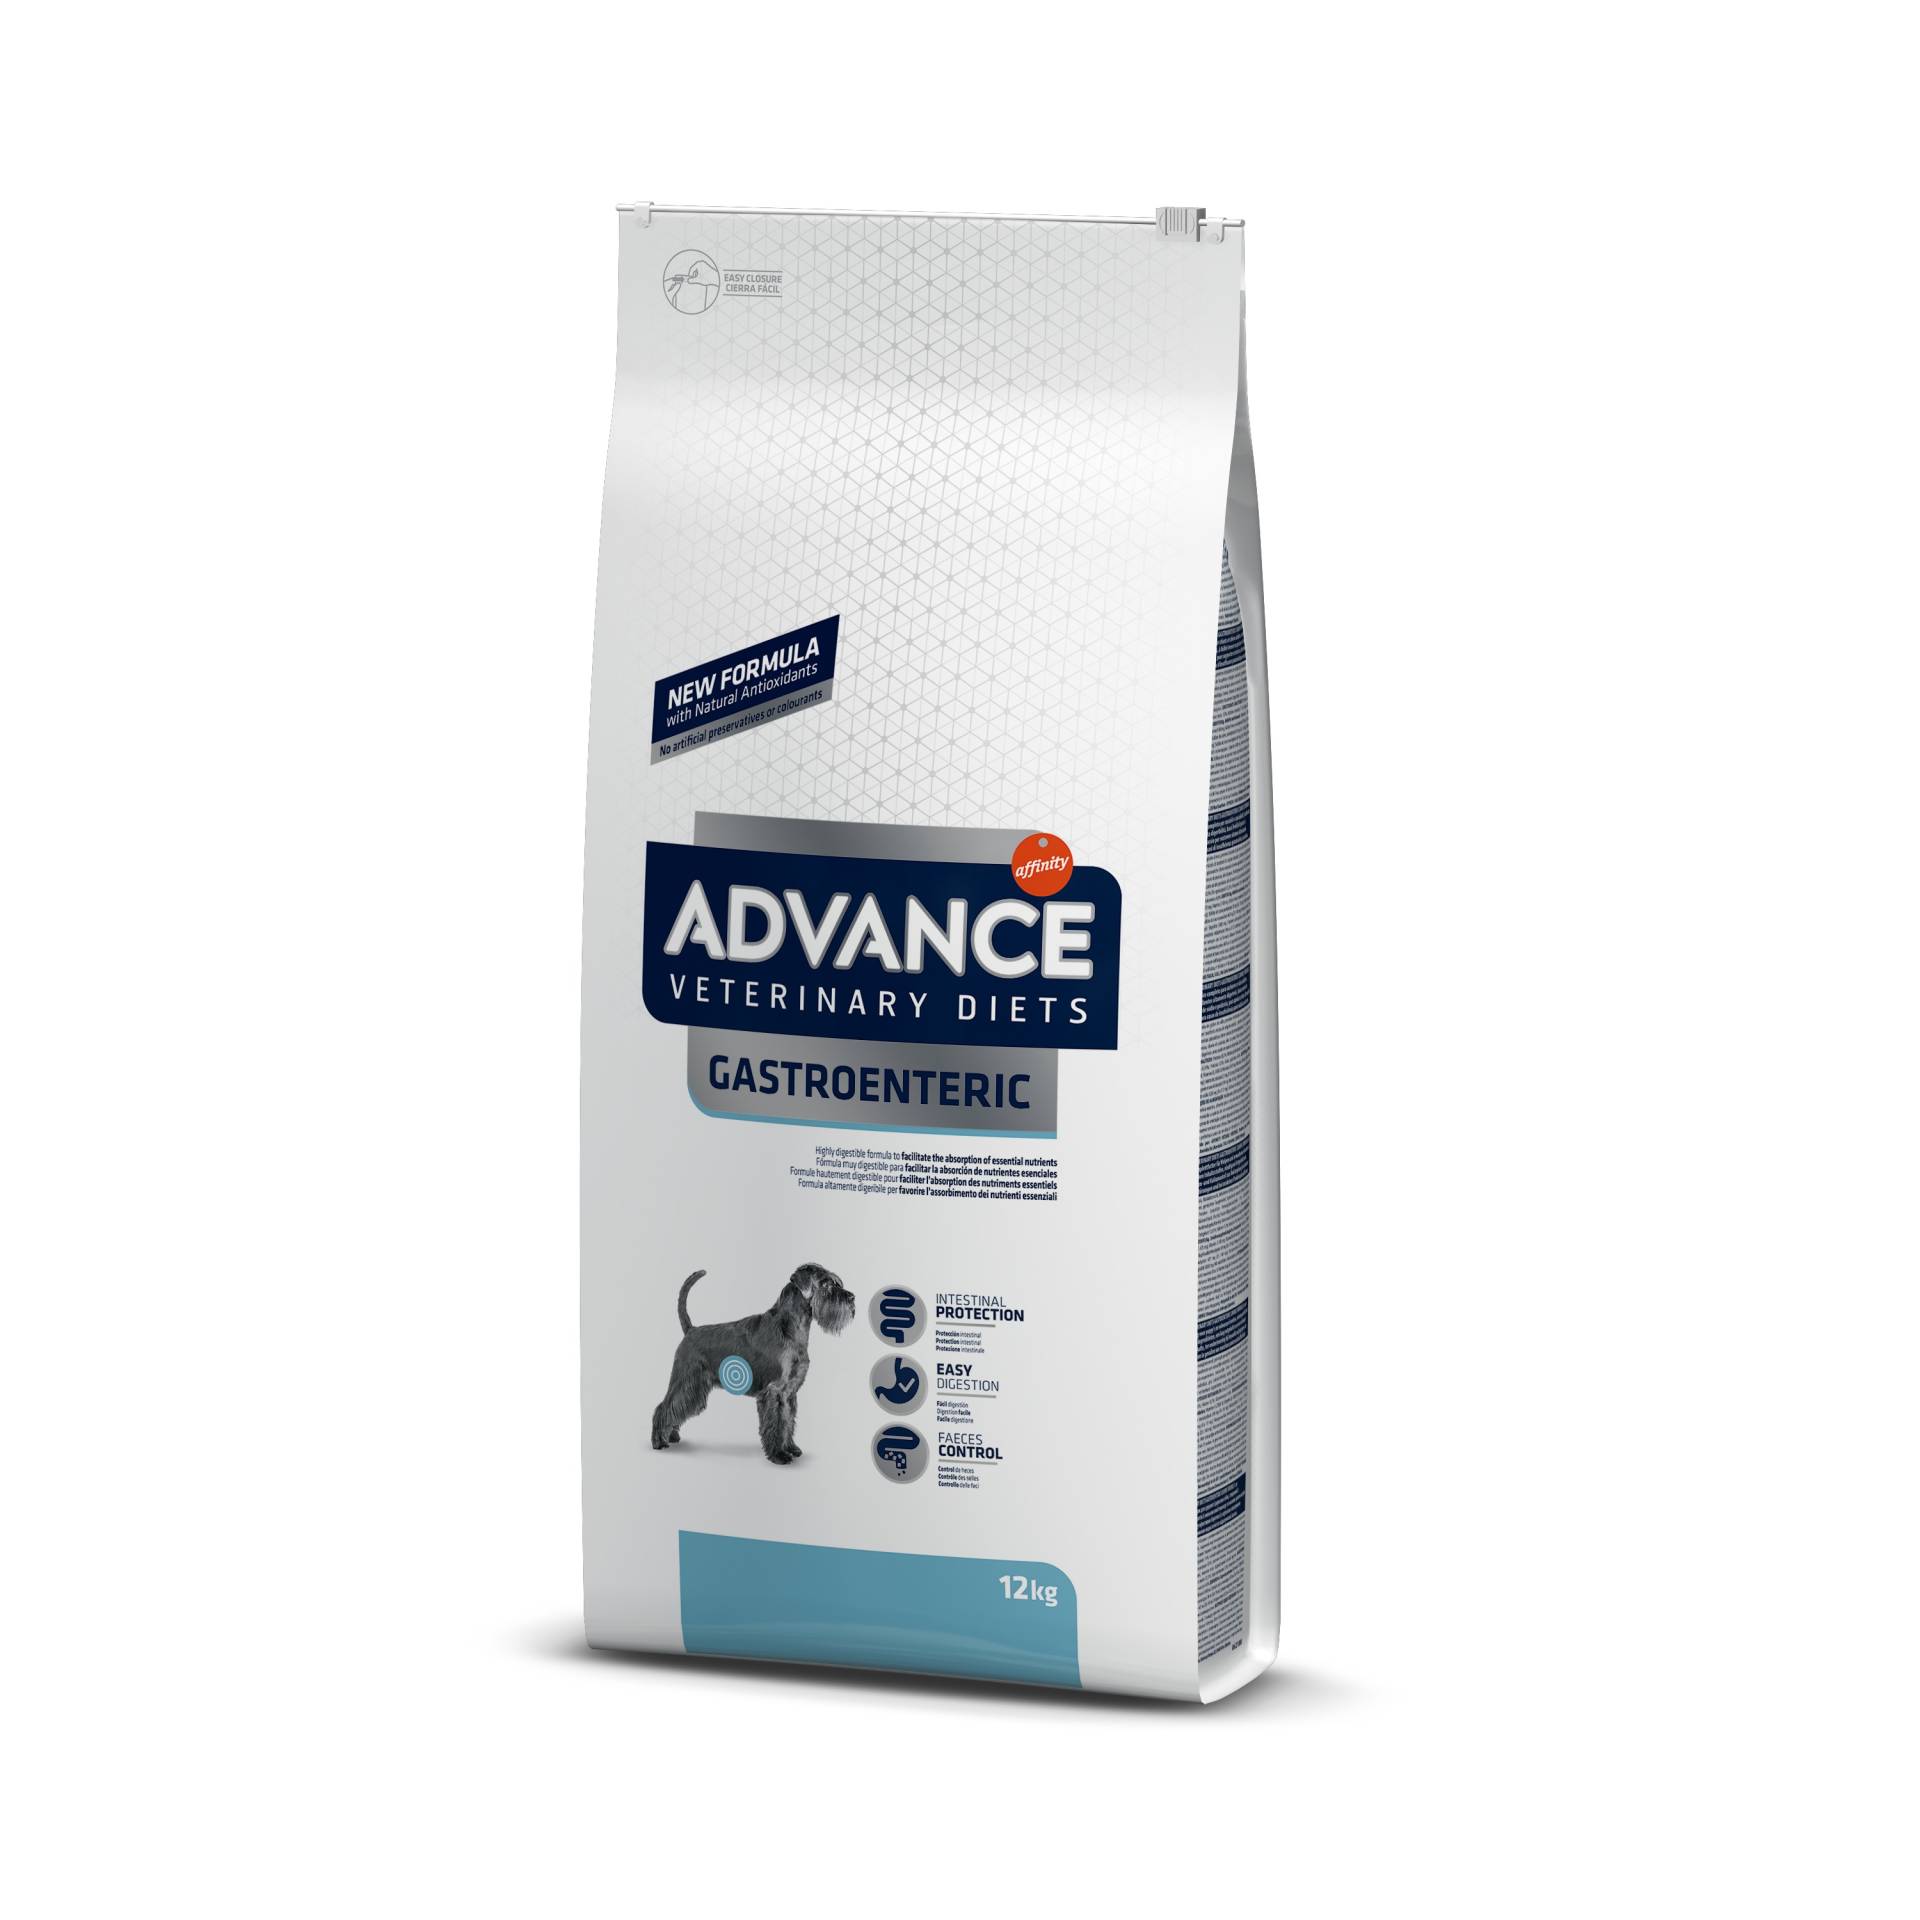 Advance Veterinary Diets Gastroenteric - 12 kg von Affinity Advance Veterinary Diets